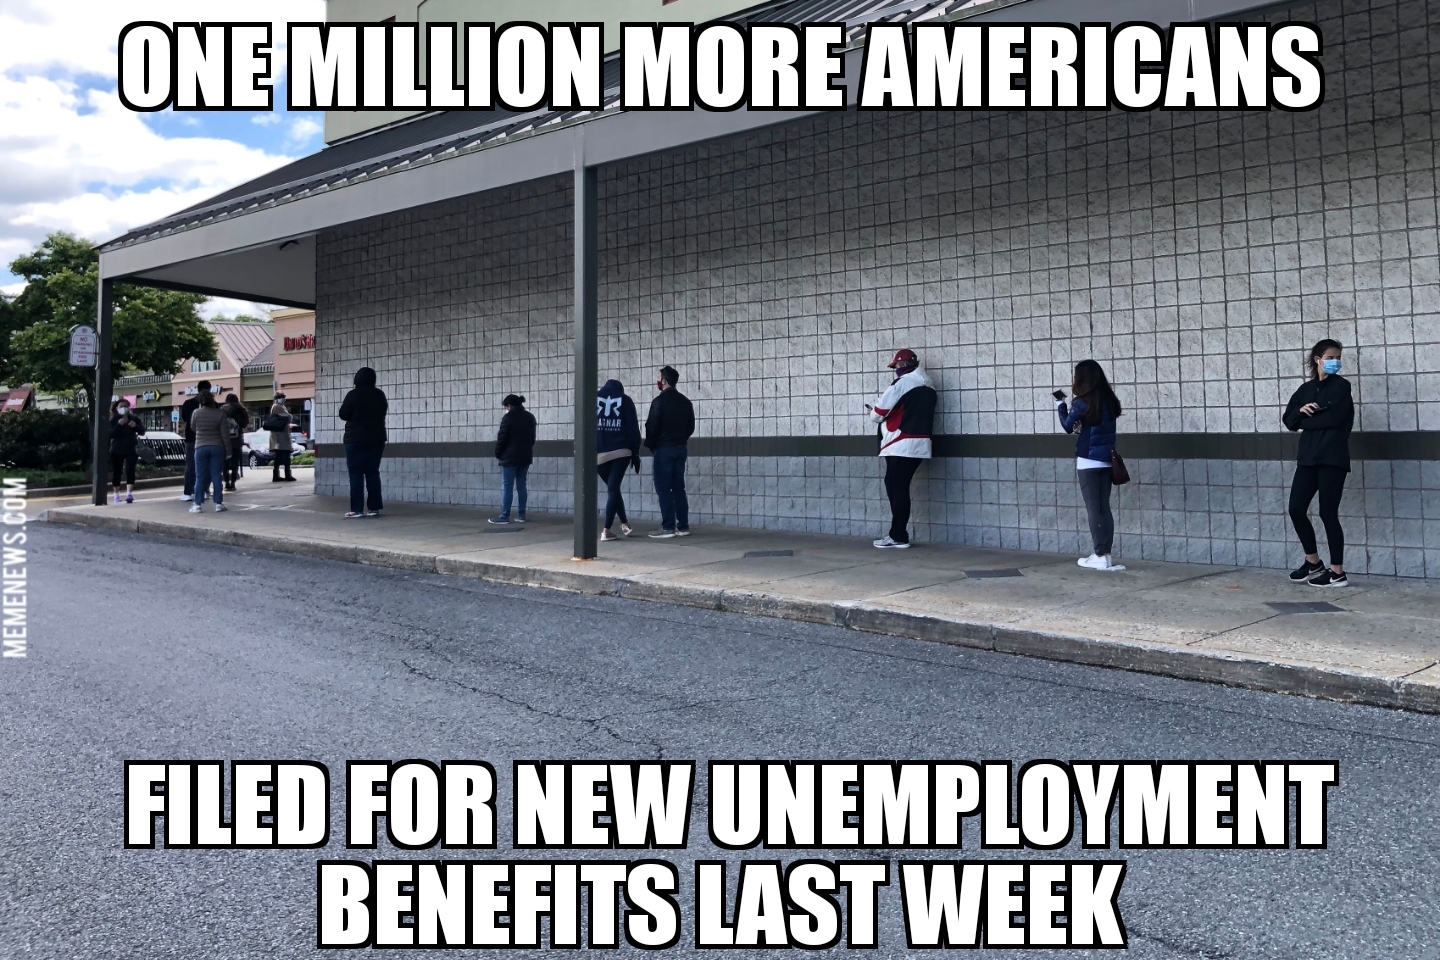 Unemployment tops 1 million again